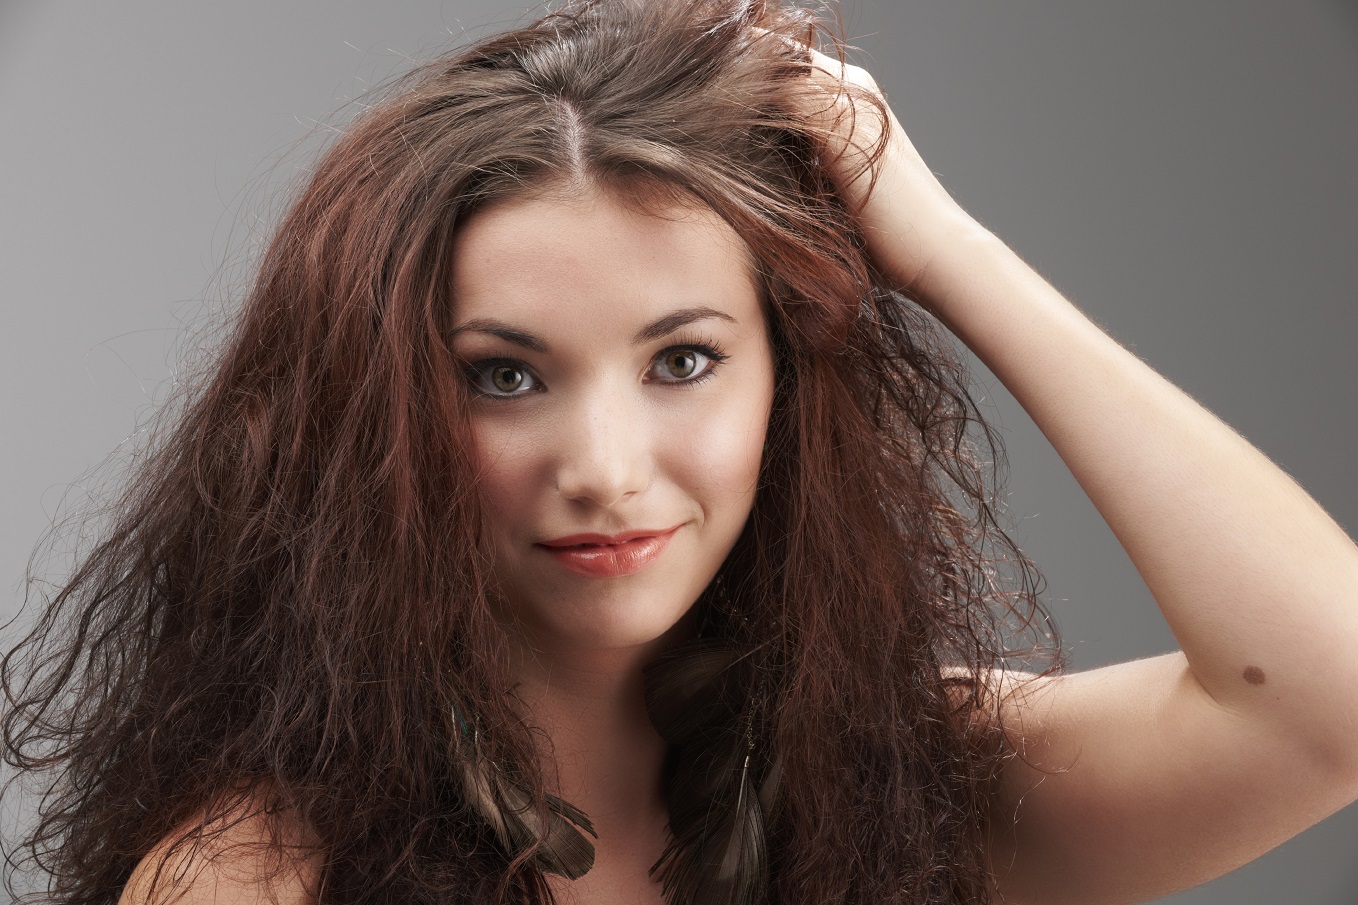 المايونيز والزبادي لعلاج الشعر التالف